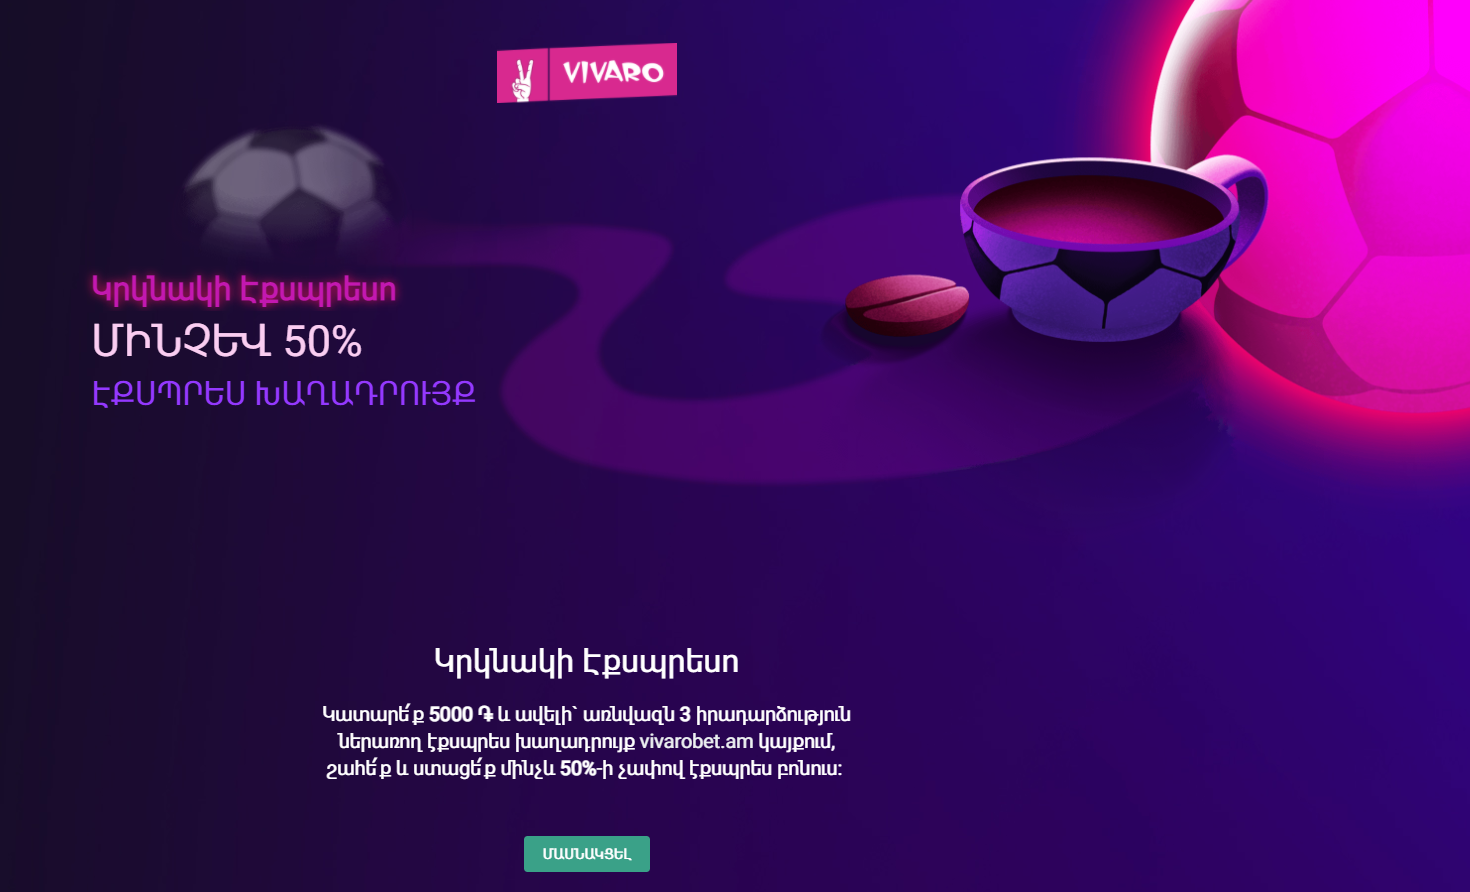 VivaroBet բջջային հավելված՝ լավագույն տարբերակը խաղացողների համար